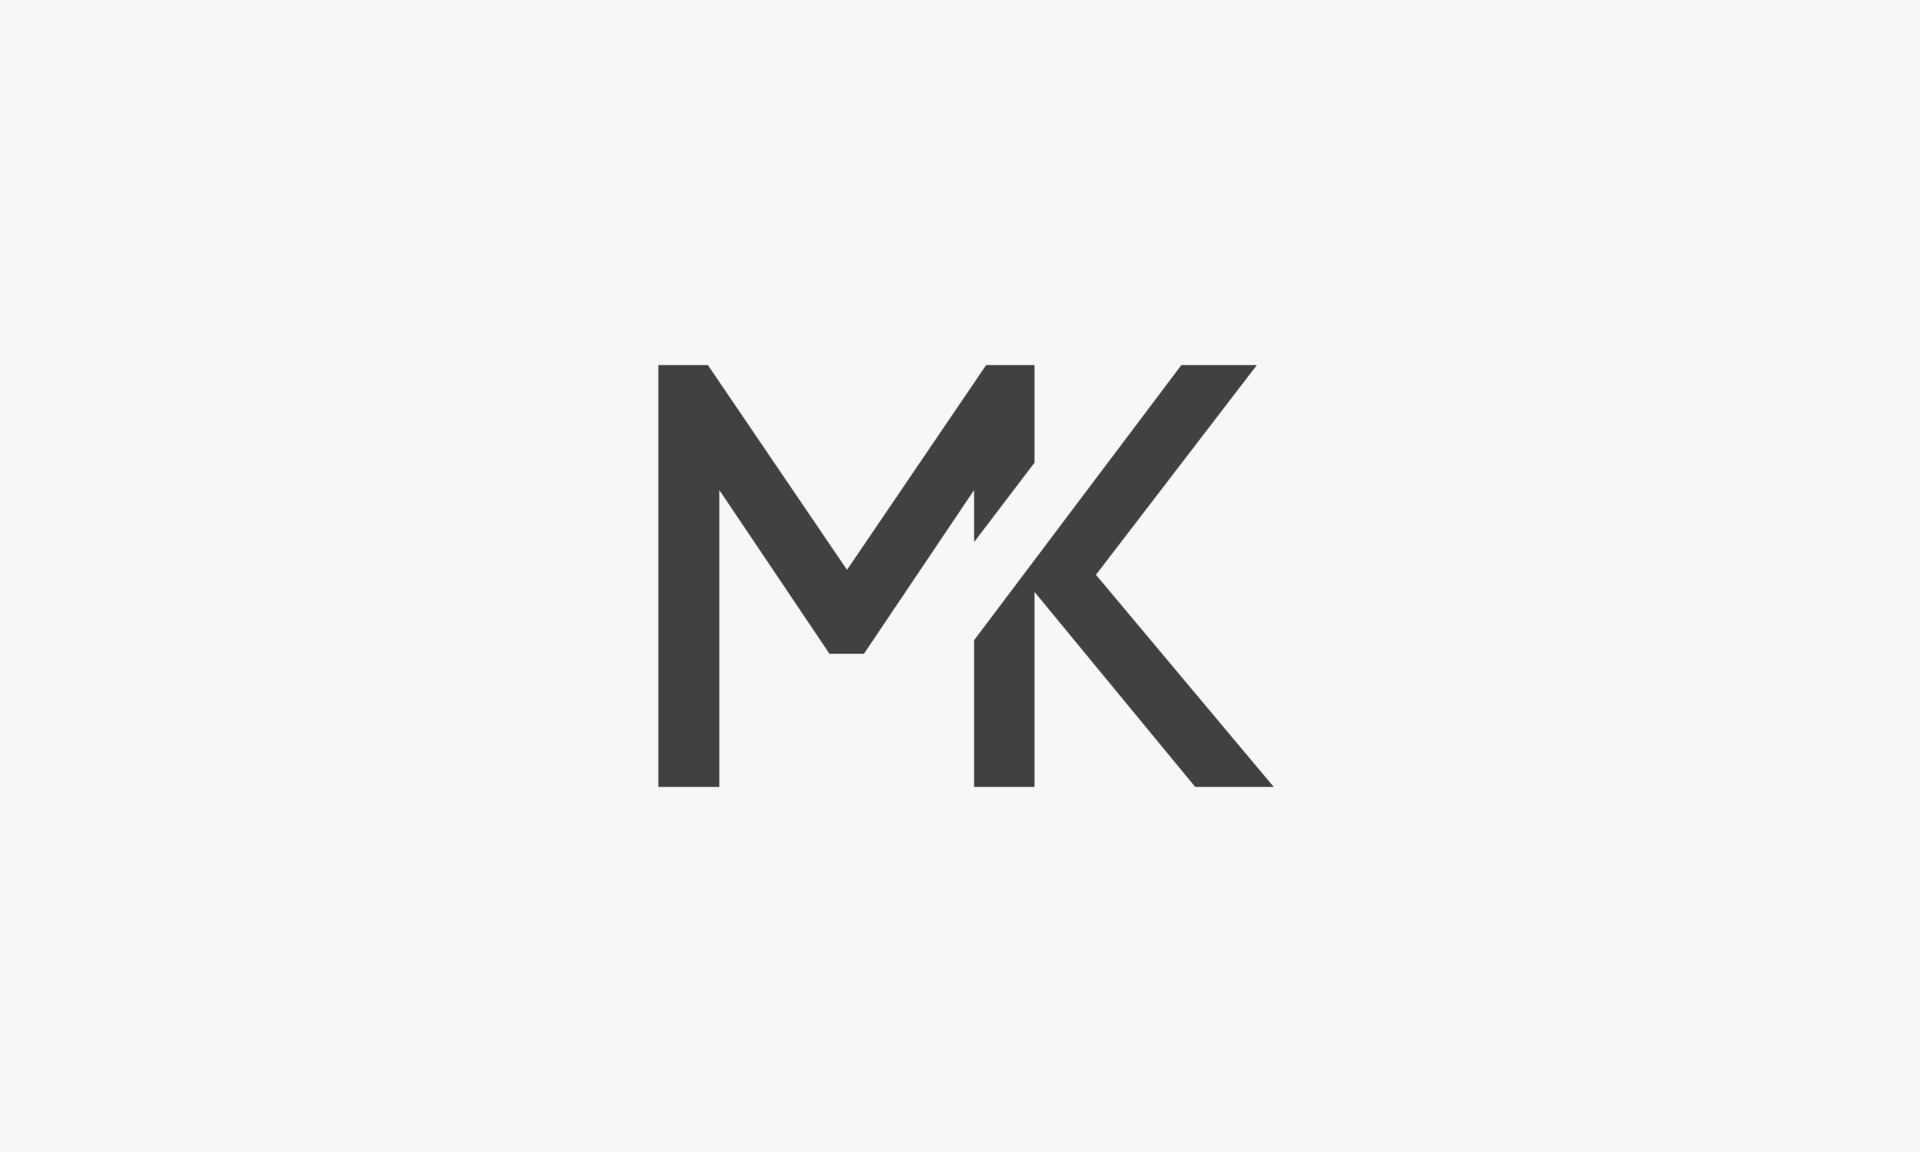 MK letter logo isolated on white background. 4701906 Vector Art at Vecteezy